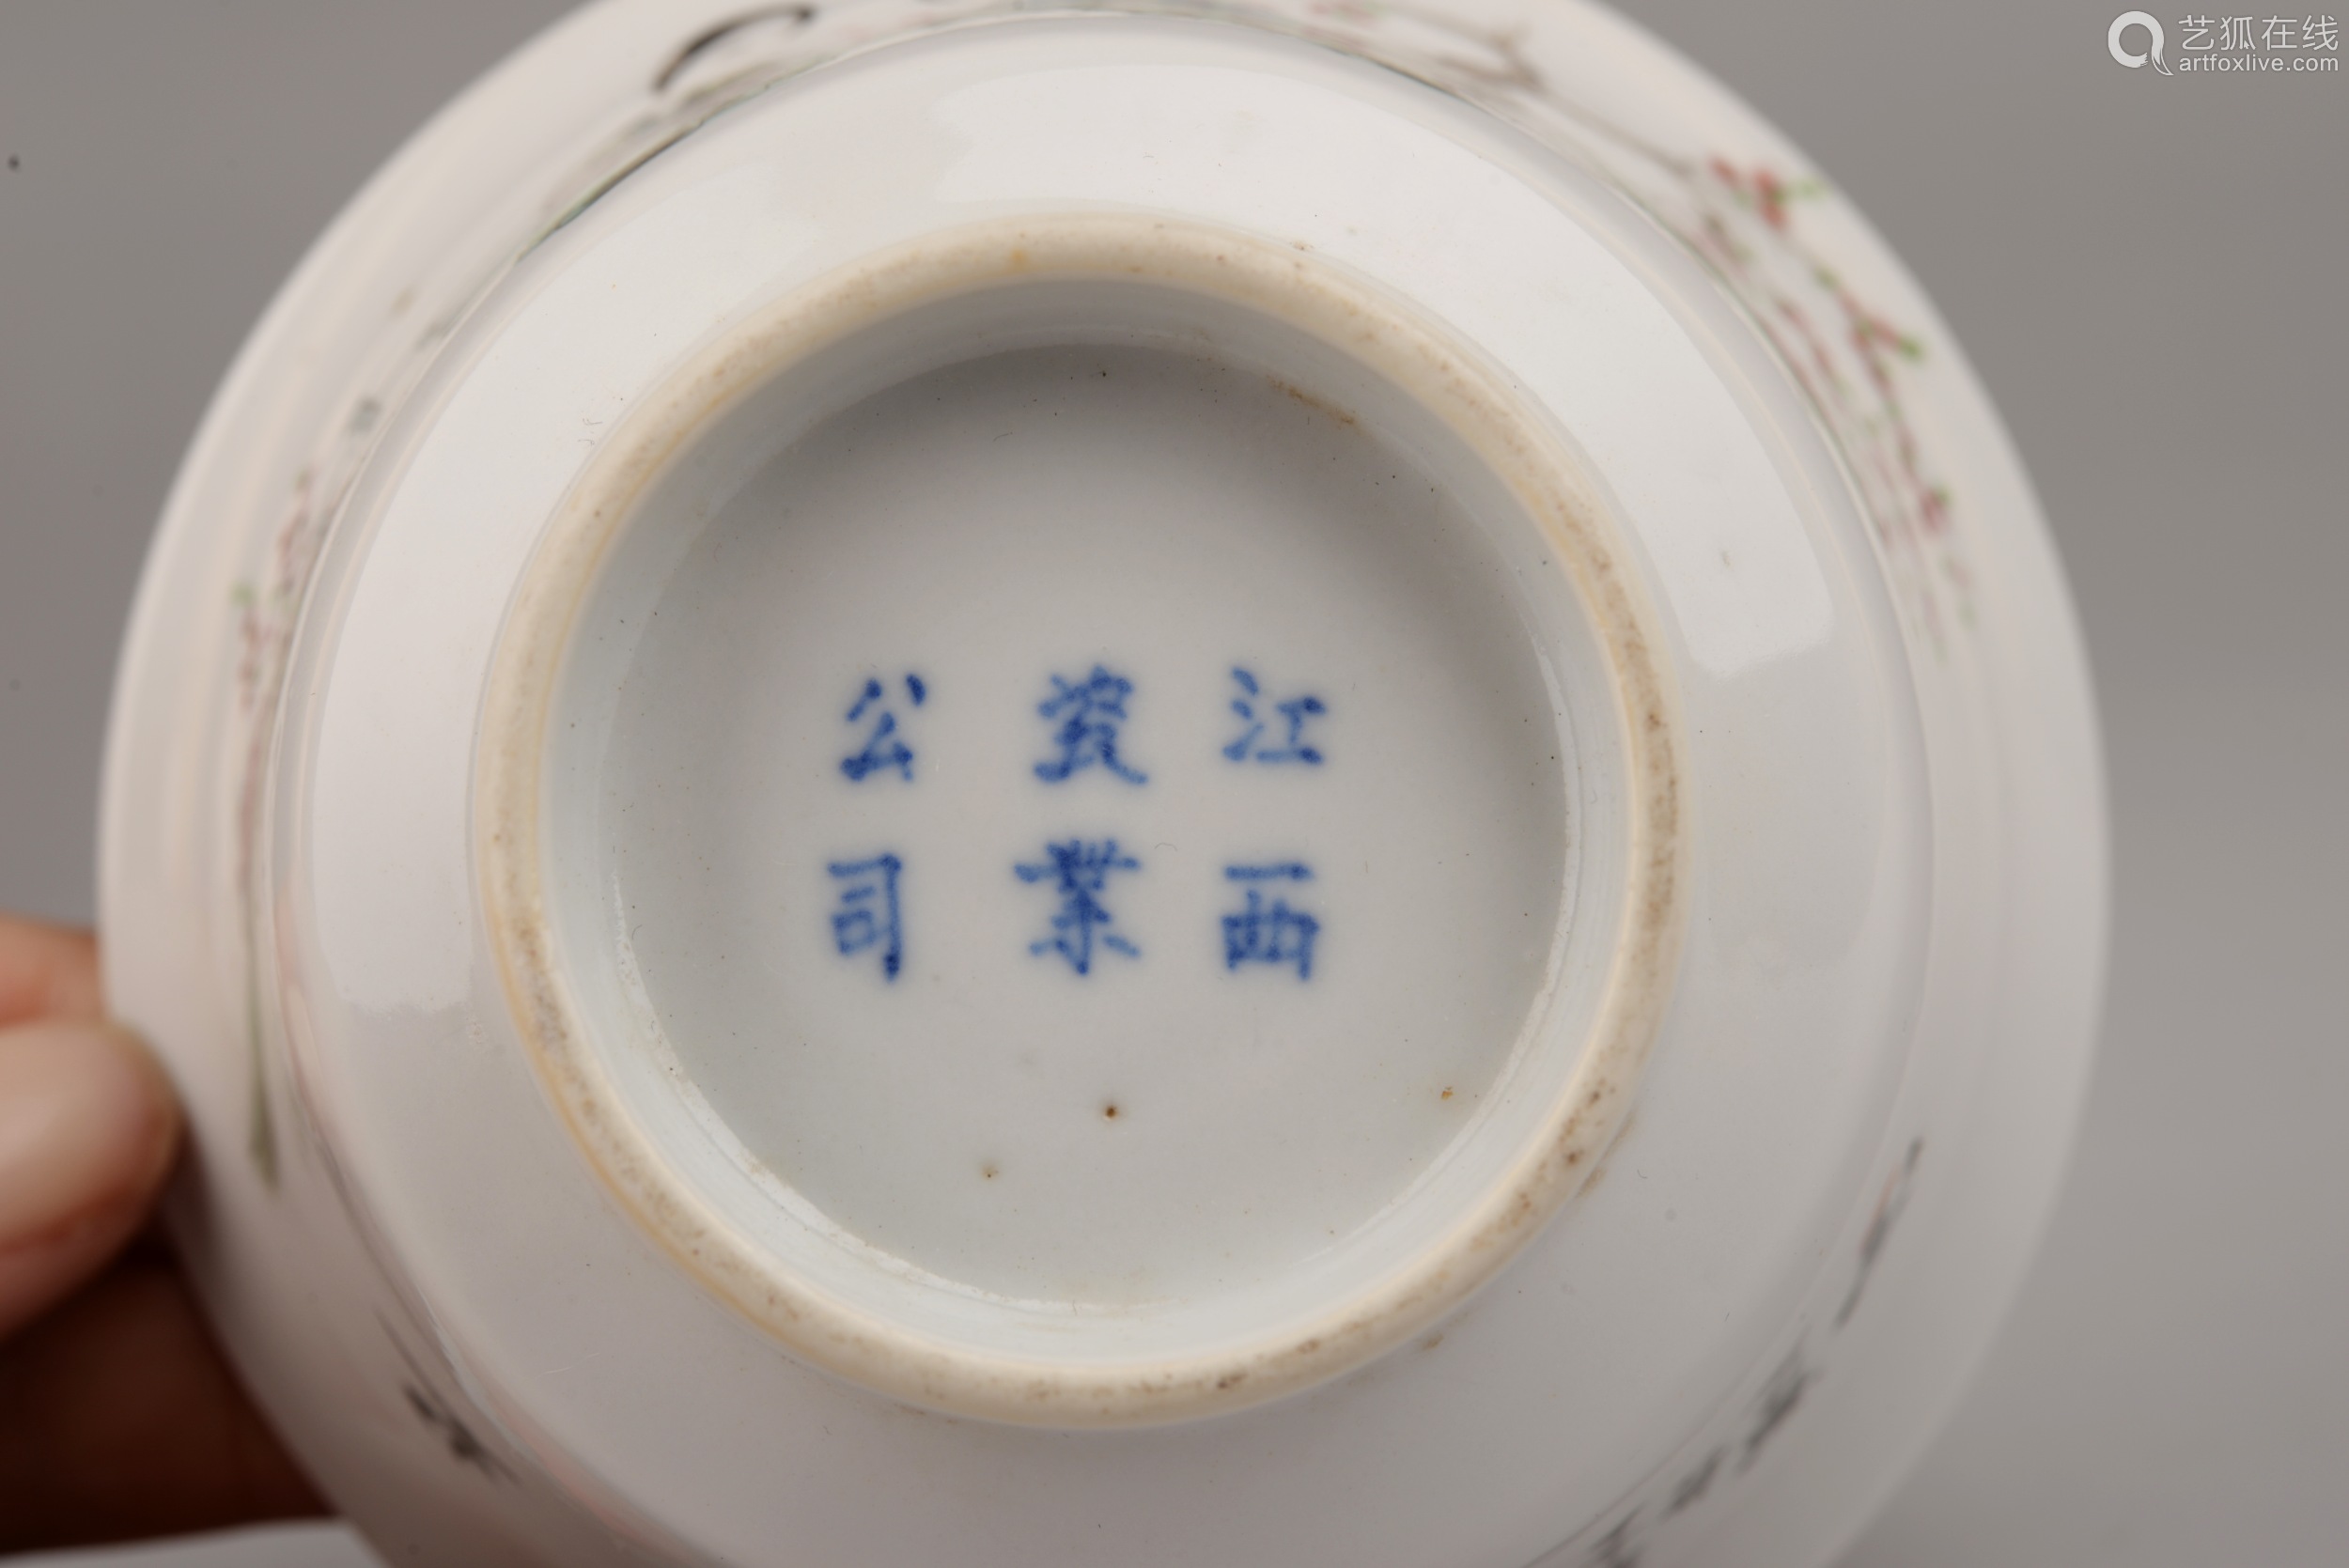 中国民国時代の皿,美人如玉 - 食器